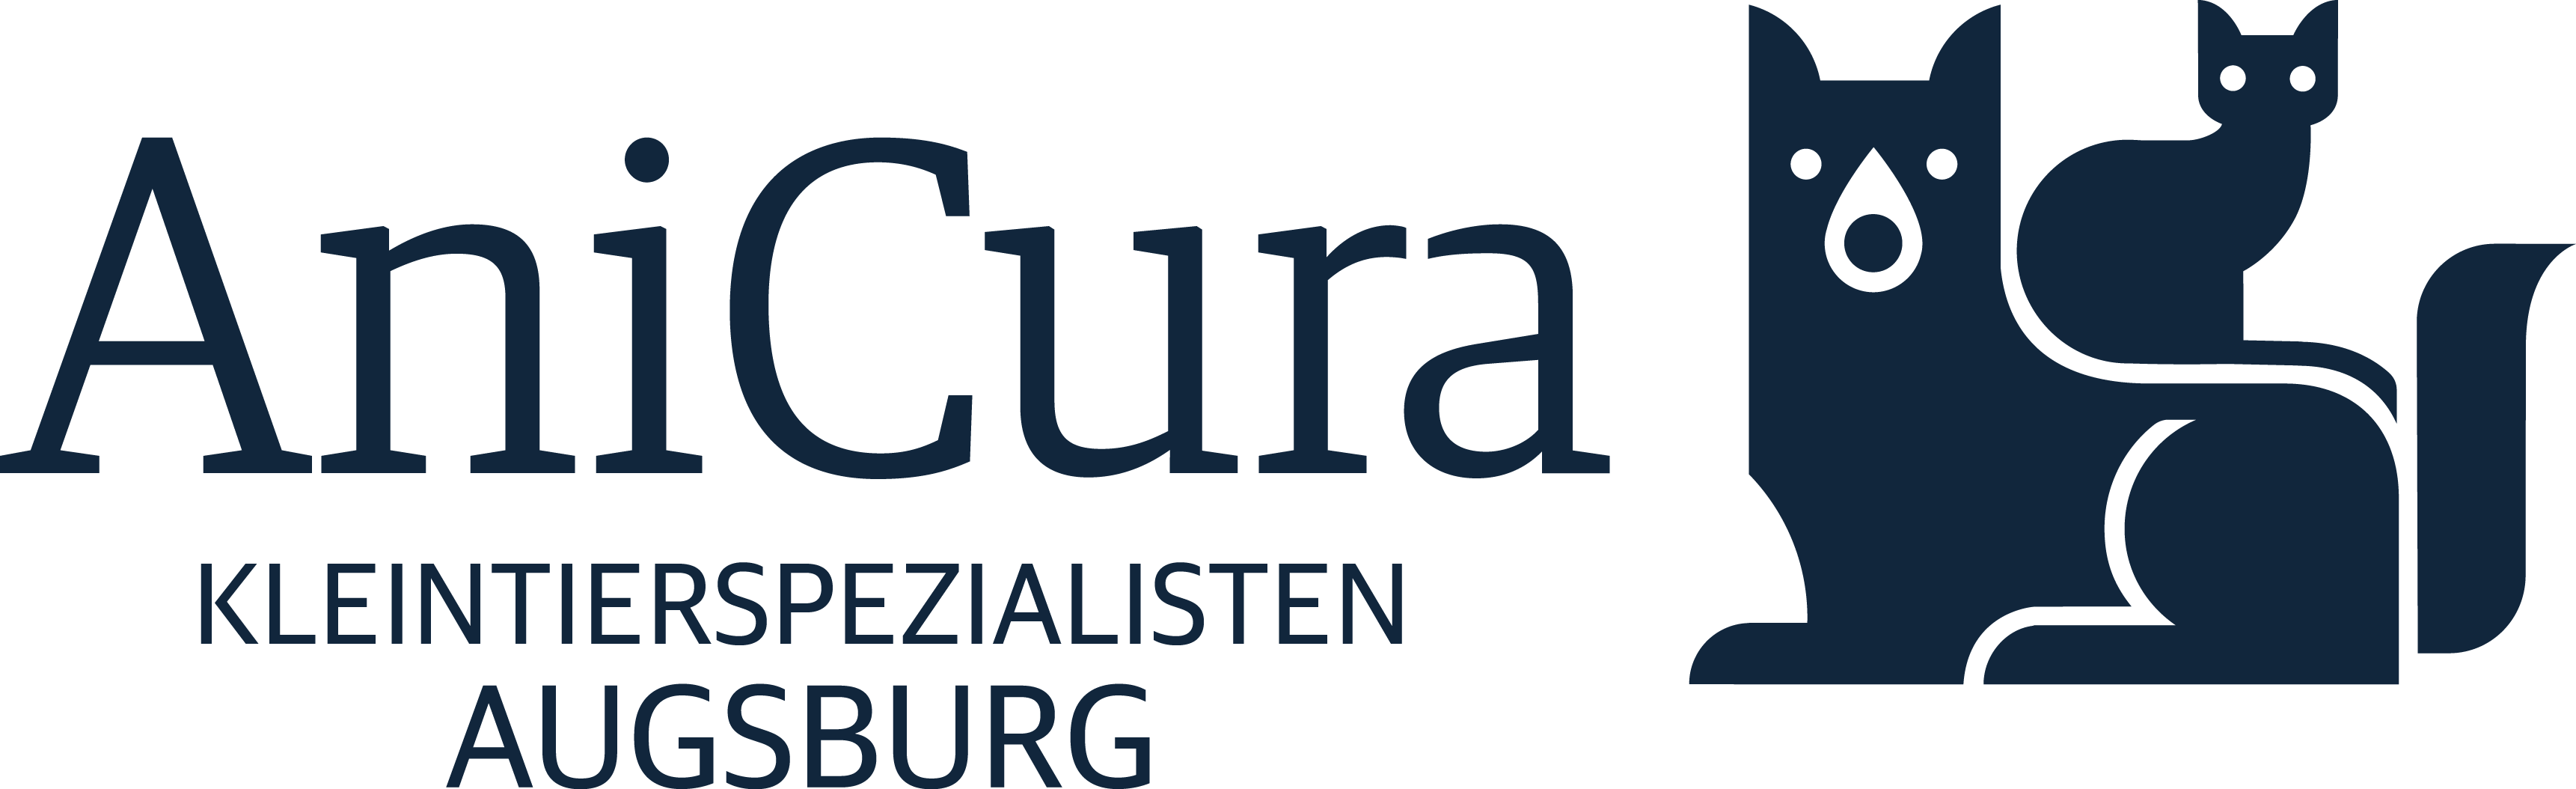 AniCura Kleintierspezialisten Augsburg logo